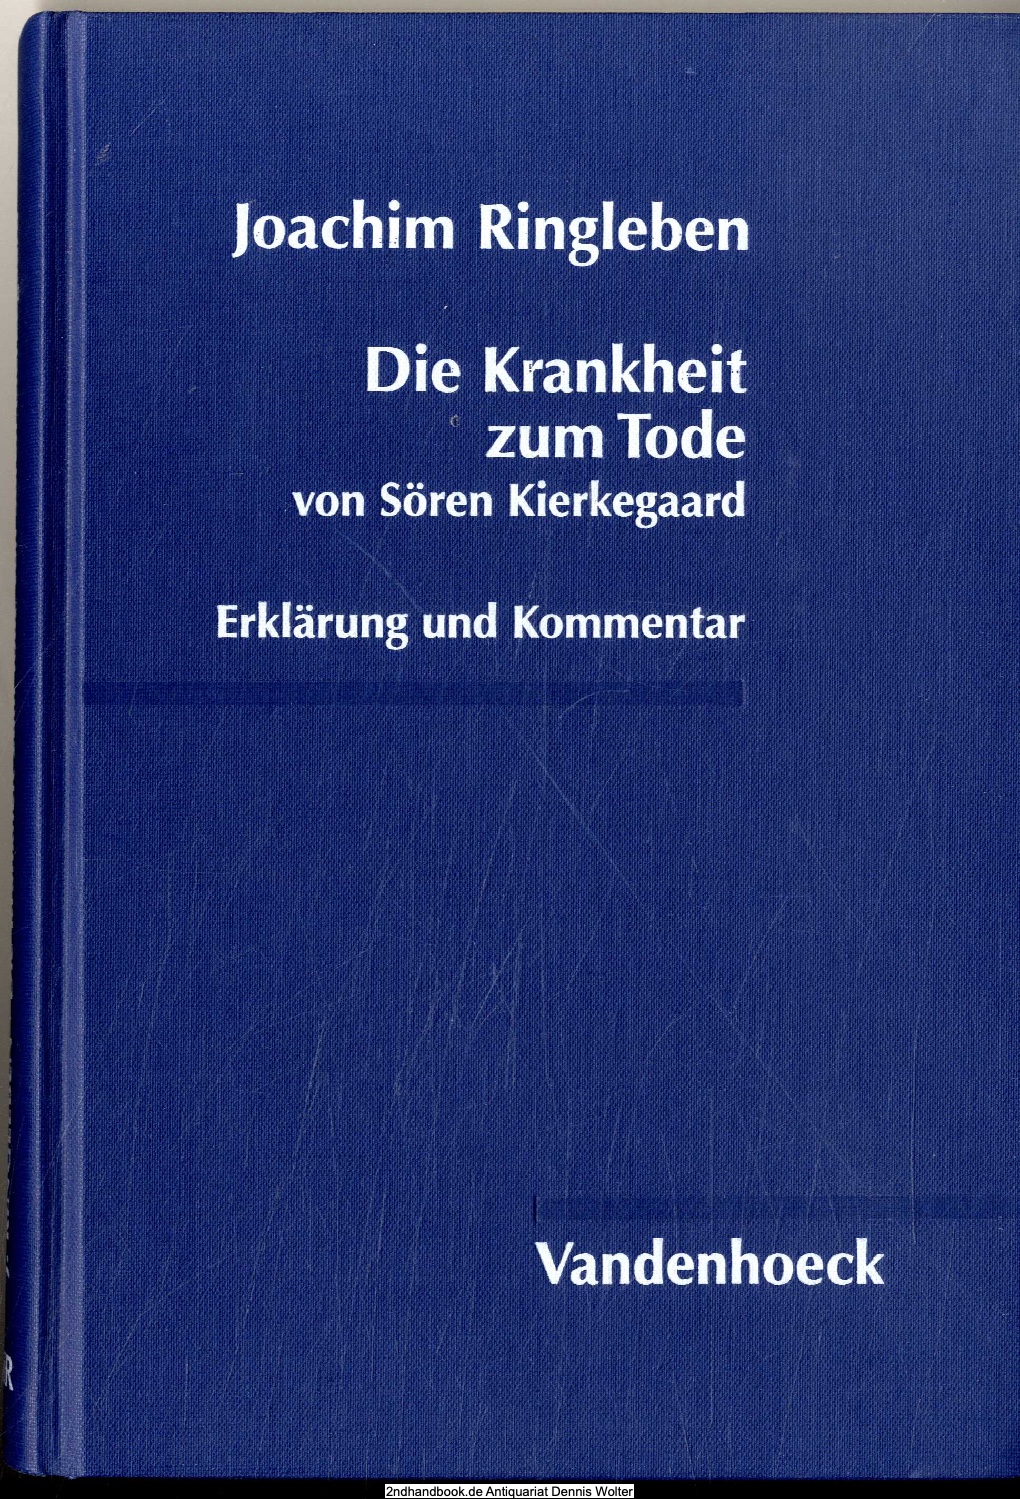 Die Krankheit zum Tode von Sören Kierkegaard : Erklärung und Kommentar - Ringleben, Joachim (Verfasser)